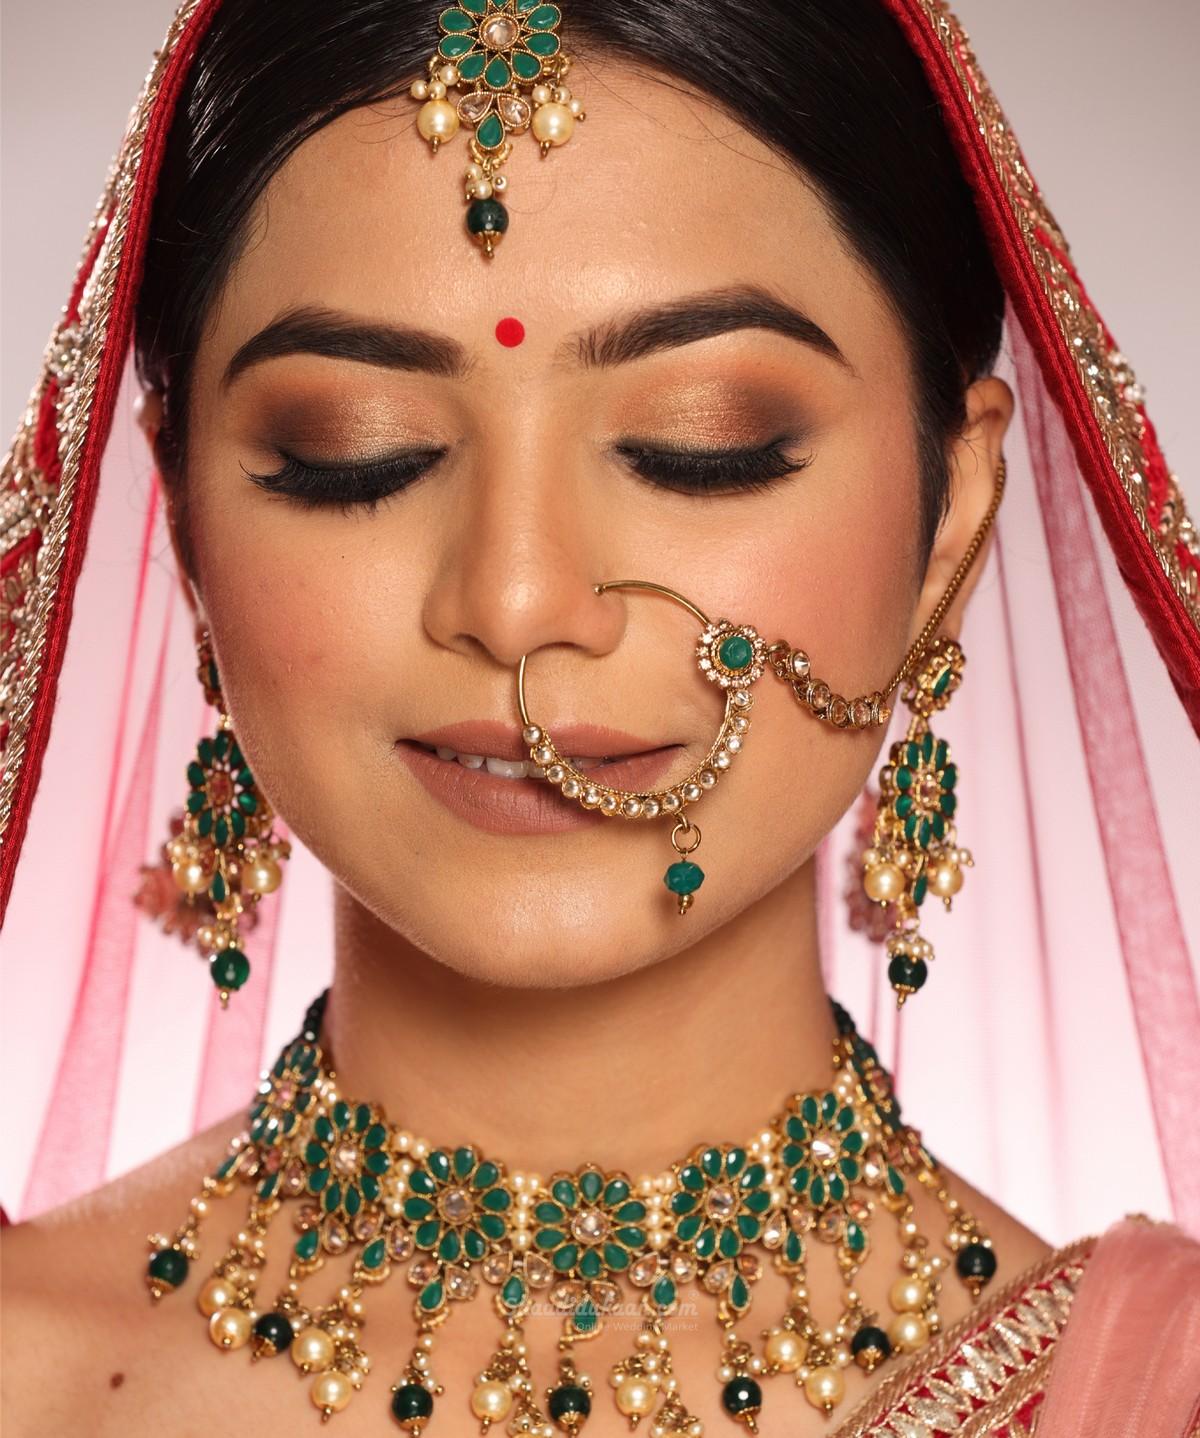 Make-up By Priya Saini